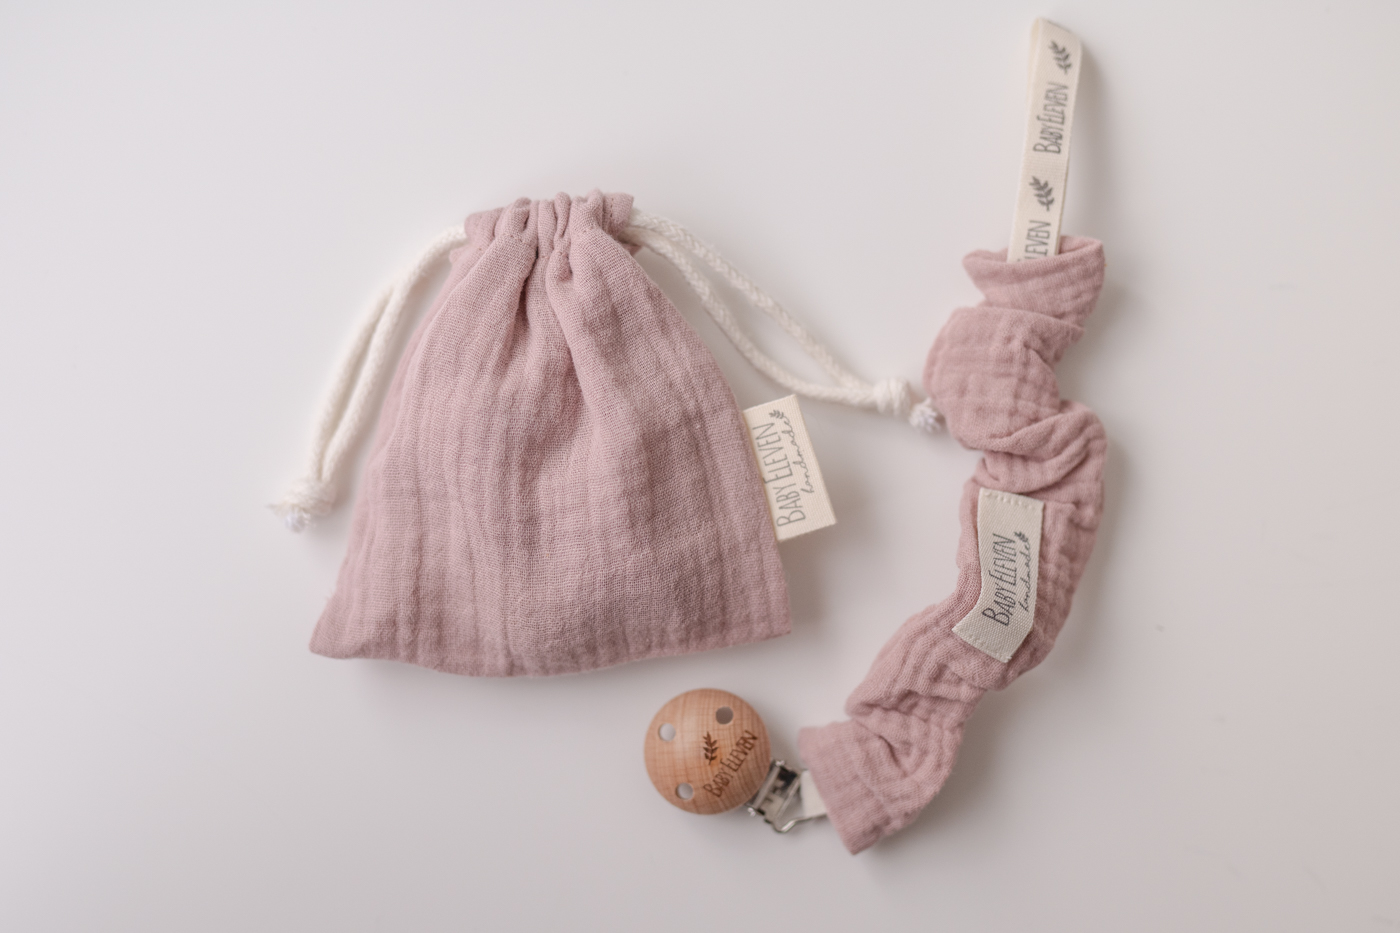 Chupeteros de bebé hechos a mano con suaves telas hechos por Koaxela.